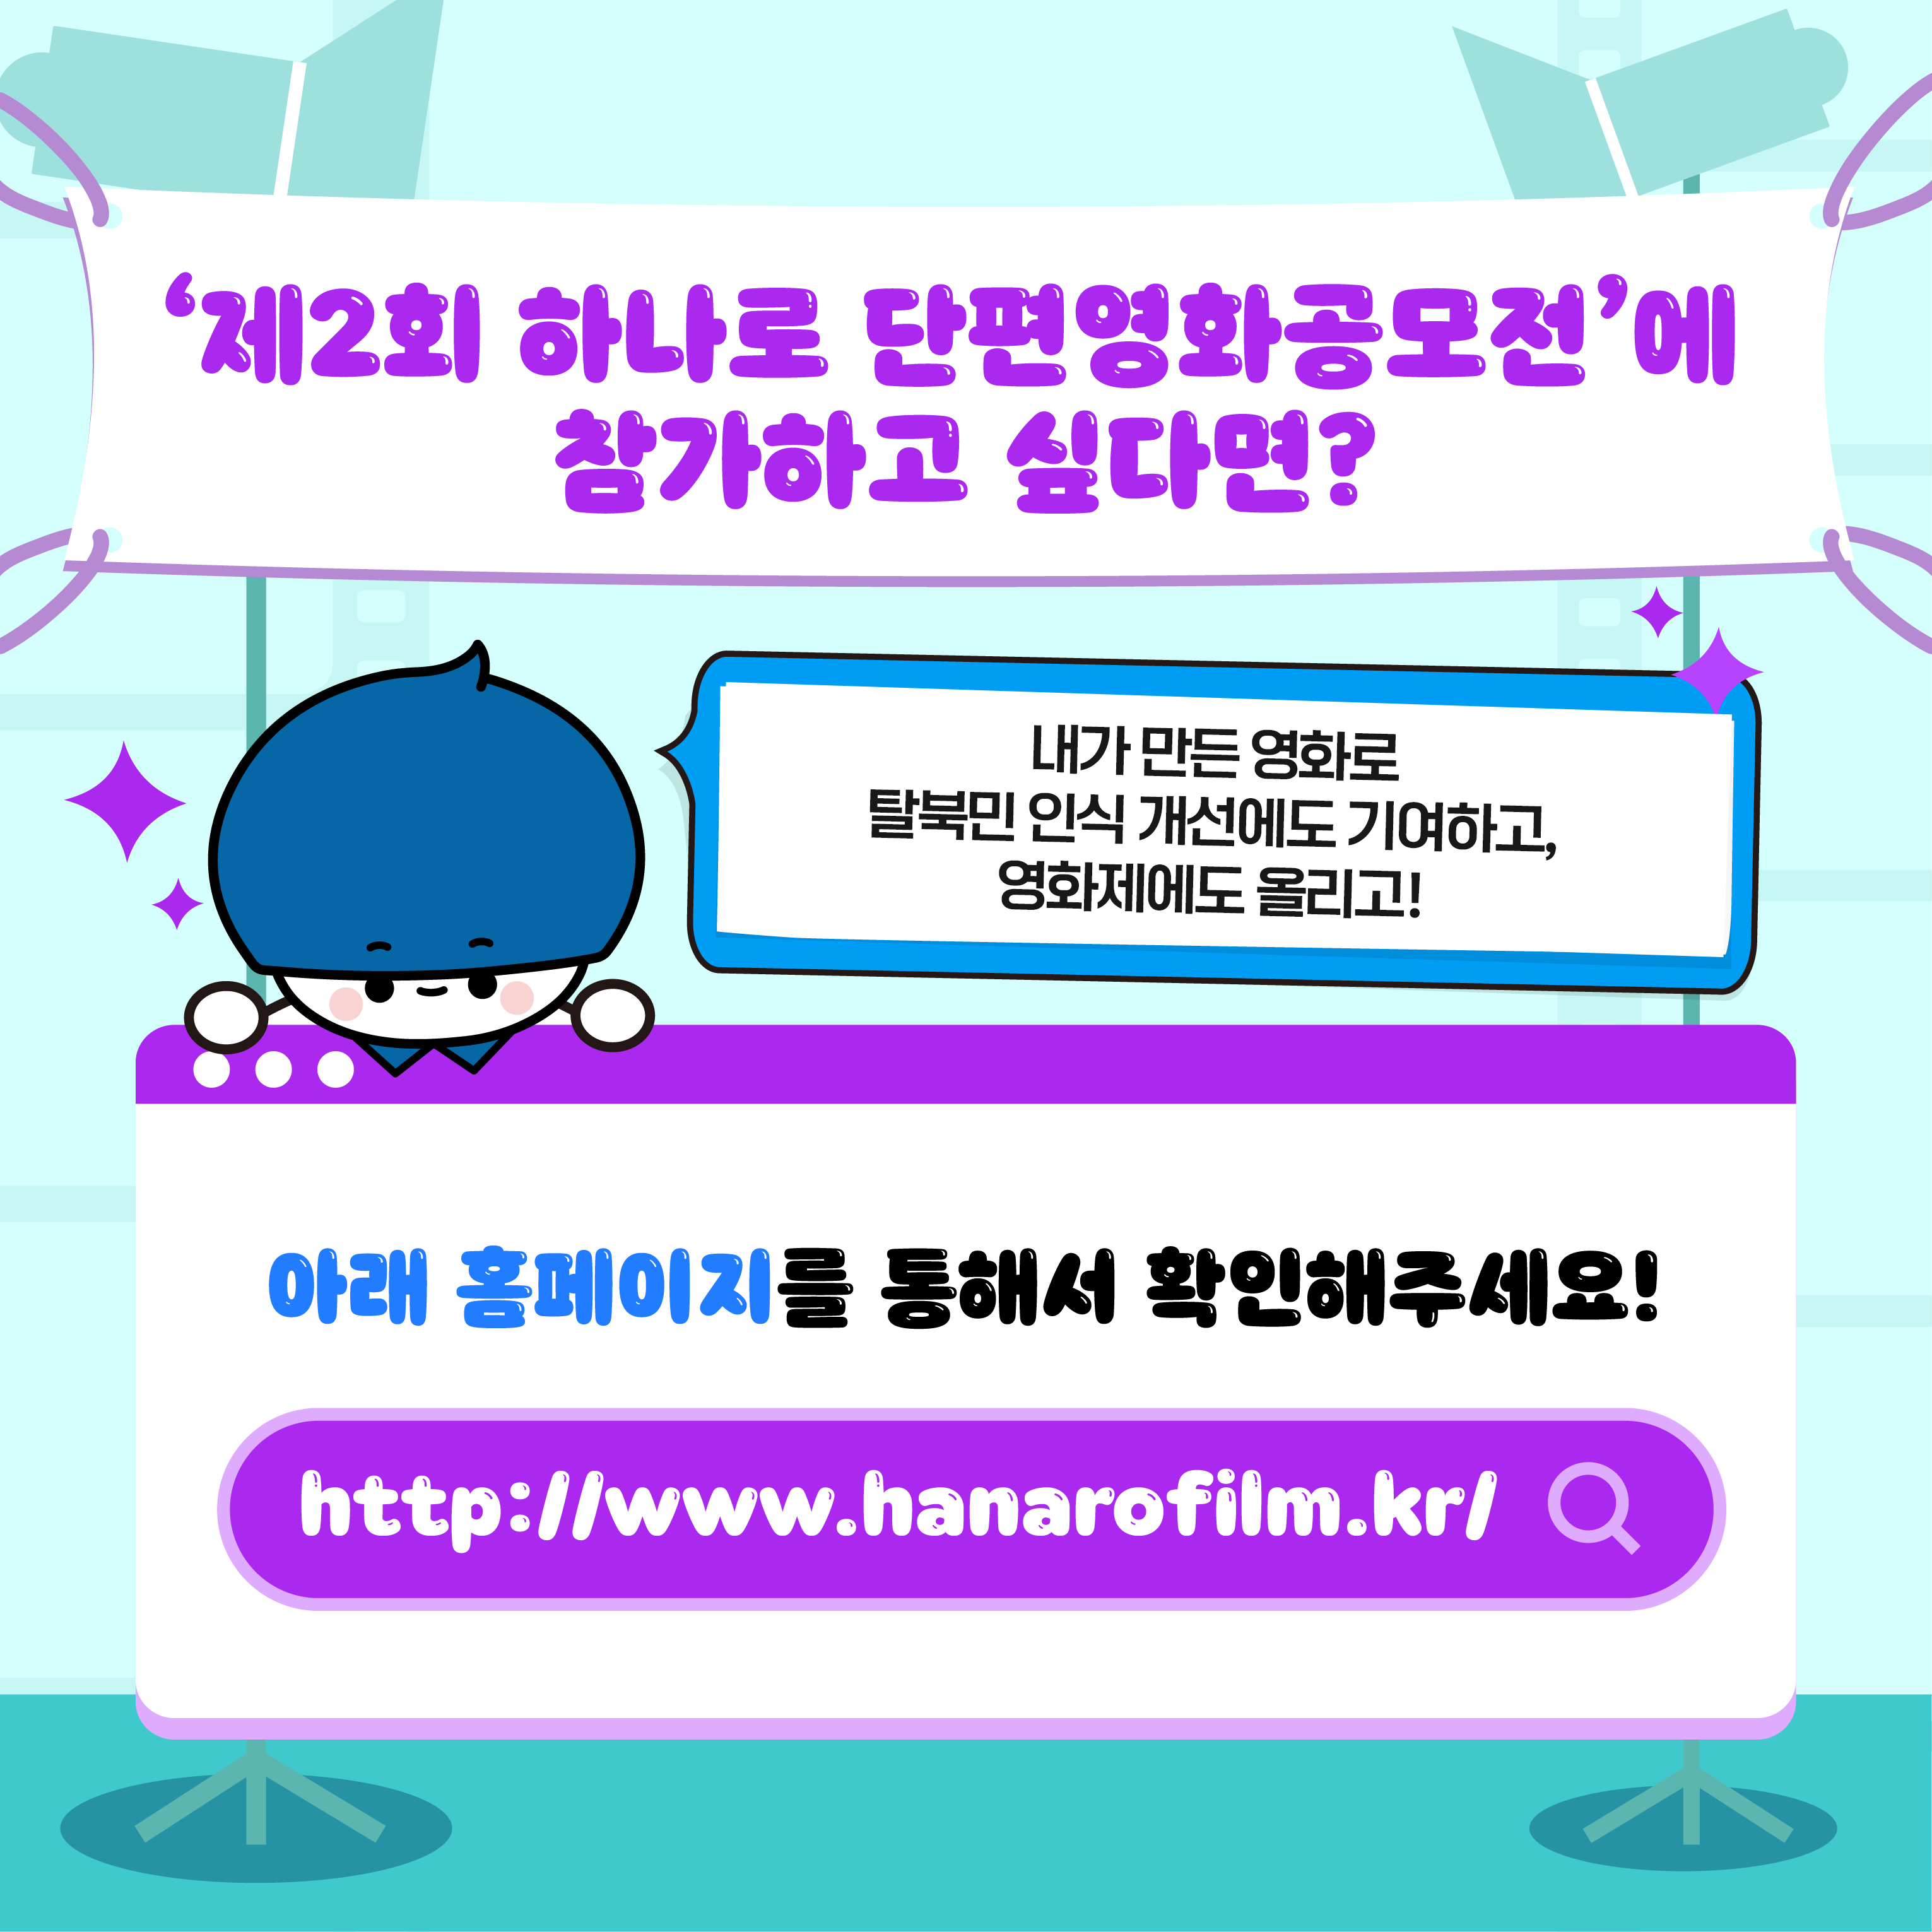 제2회 하나로 단편영화공모전에 참가하고 싶다면?
내가 만든 영화로 탈북민 인식 개선에도 기여하고, 영화제에도 올리고!
아래 홈페이지를 통해서 확인해주세요!
http://www.hanarofilm.kr/